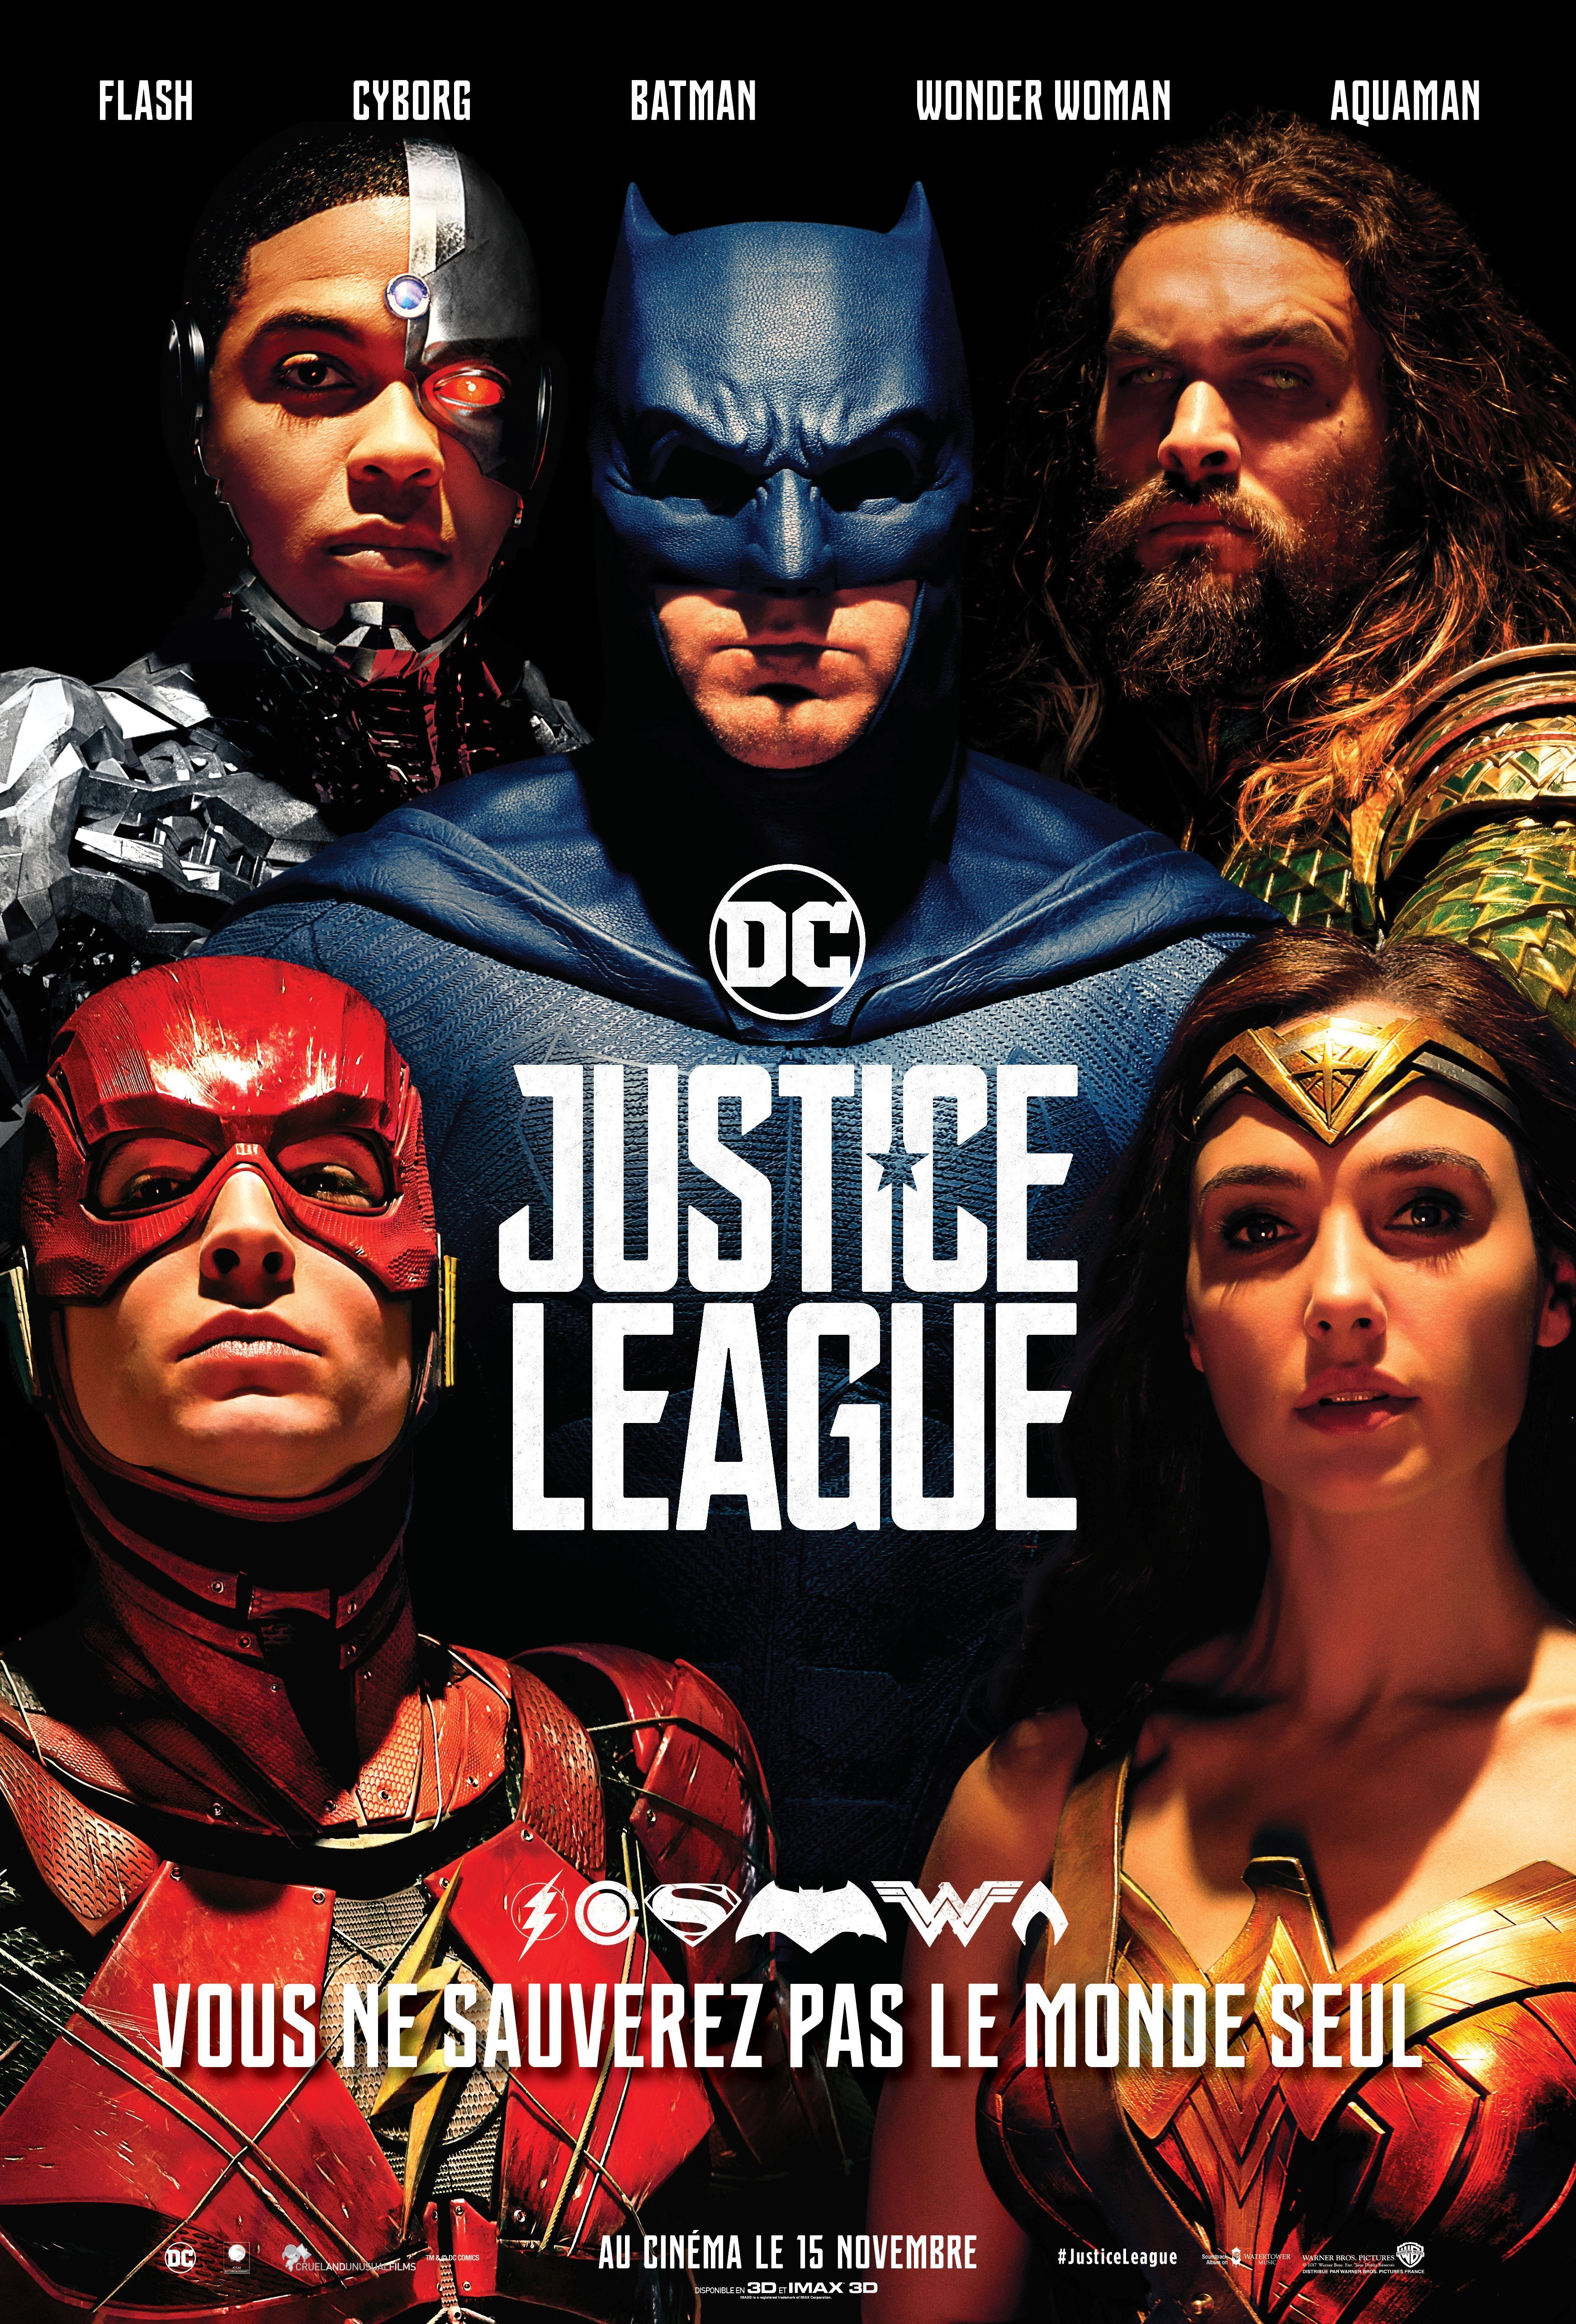 Affiche française du film Justice League avec Wonder Woman, Cyborg, Batman, Aquaman et Flash